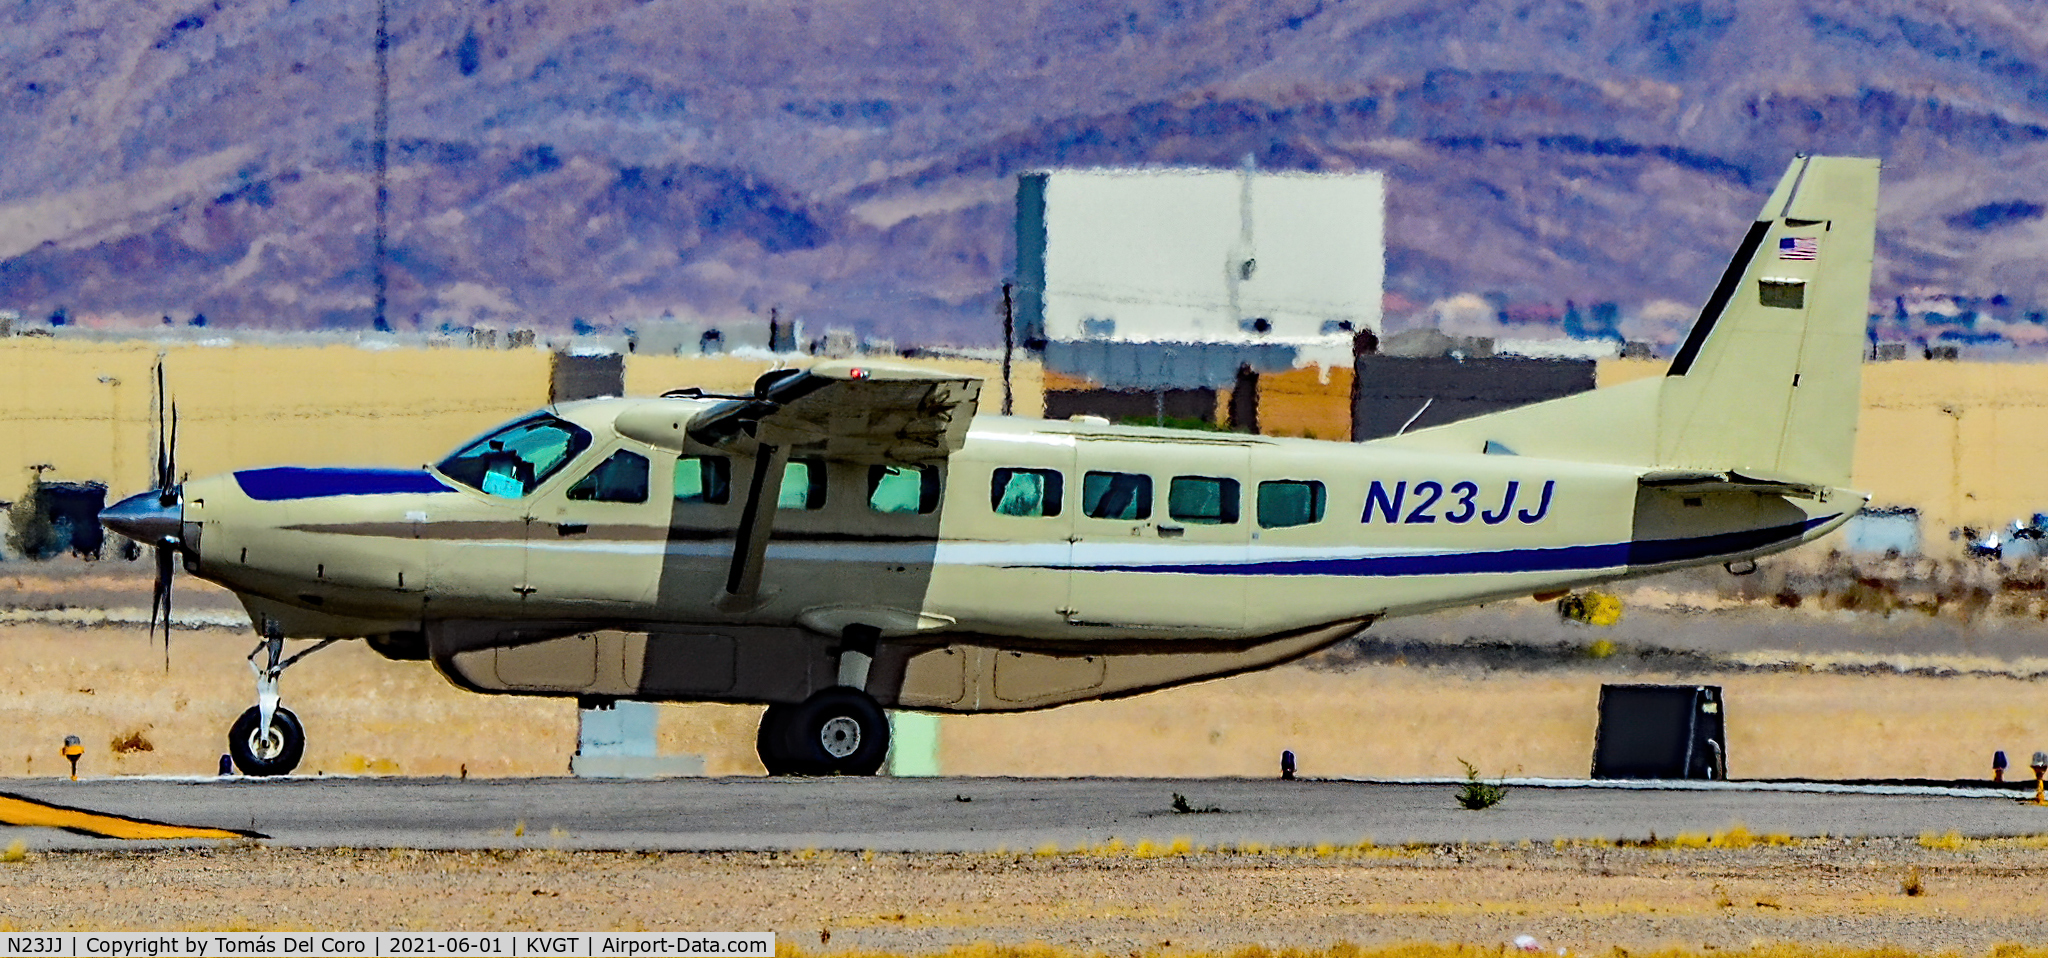 N23JJ, 2000 Cessna 208B C/N 208B0839, N23JJ 2000 Cessna 208B Grand Caravan s/n 208B0839 - North Las Vegas Airport  KVGT
Photo: Tomás Del Coro
June 1, 2021